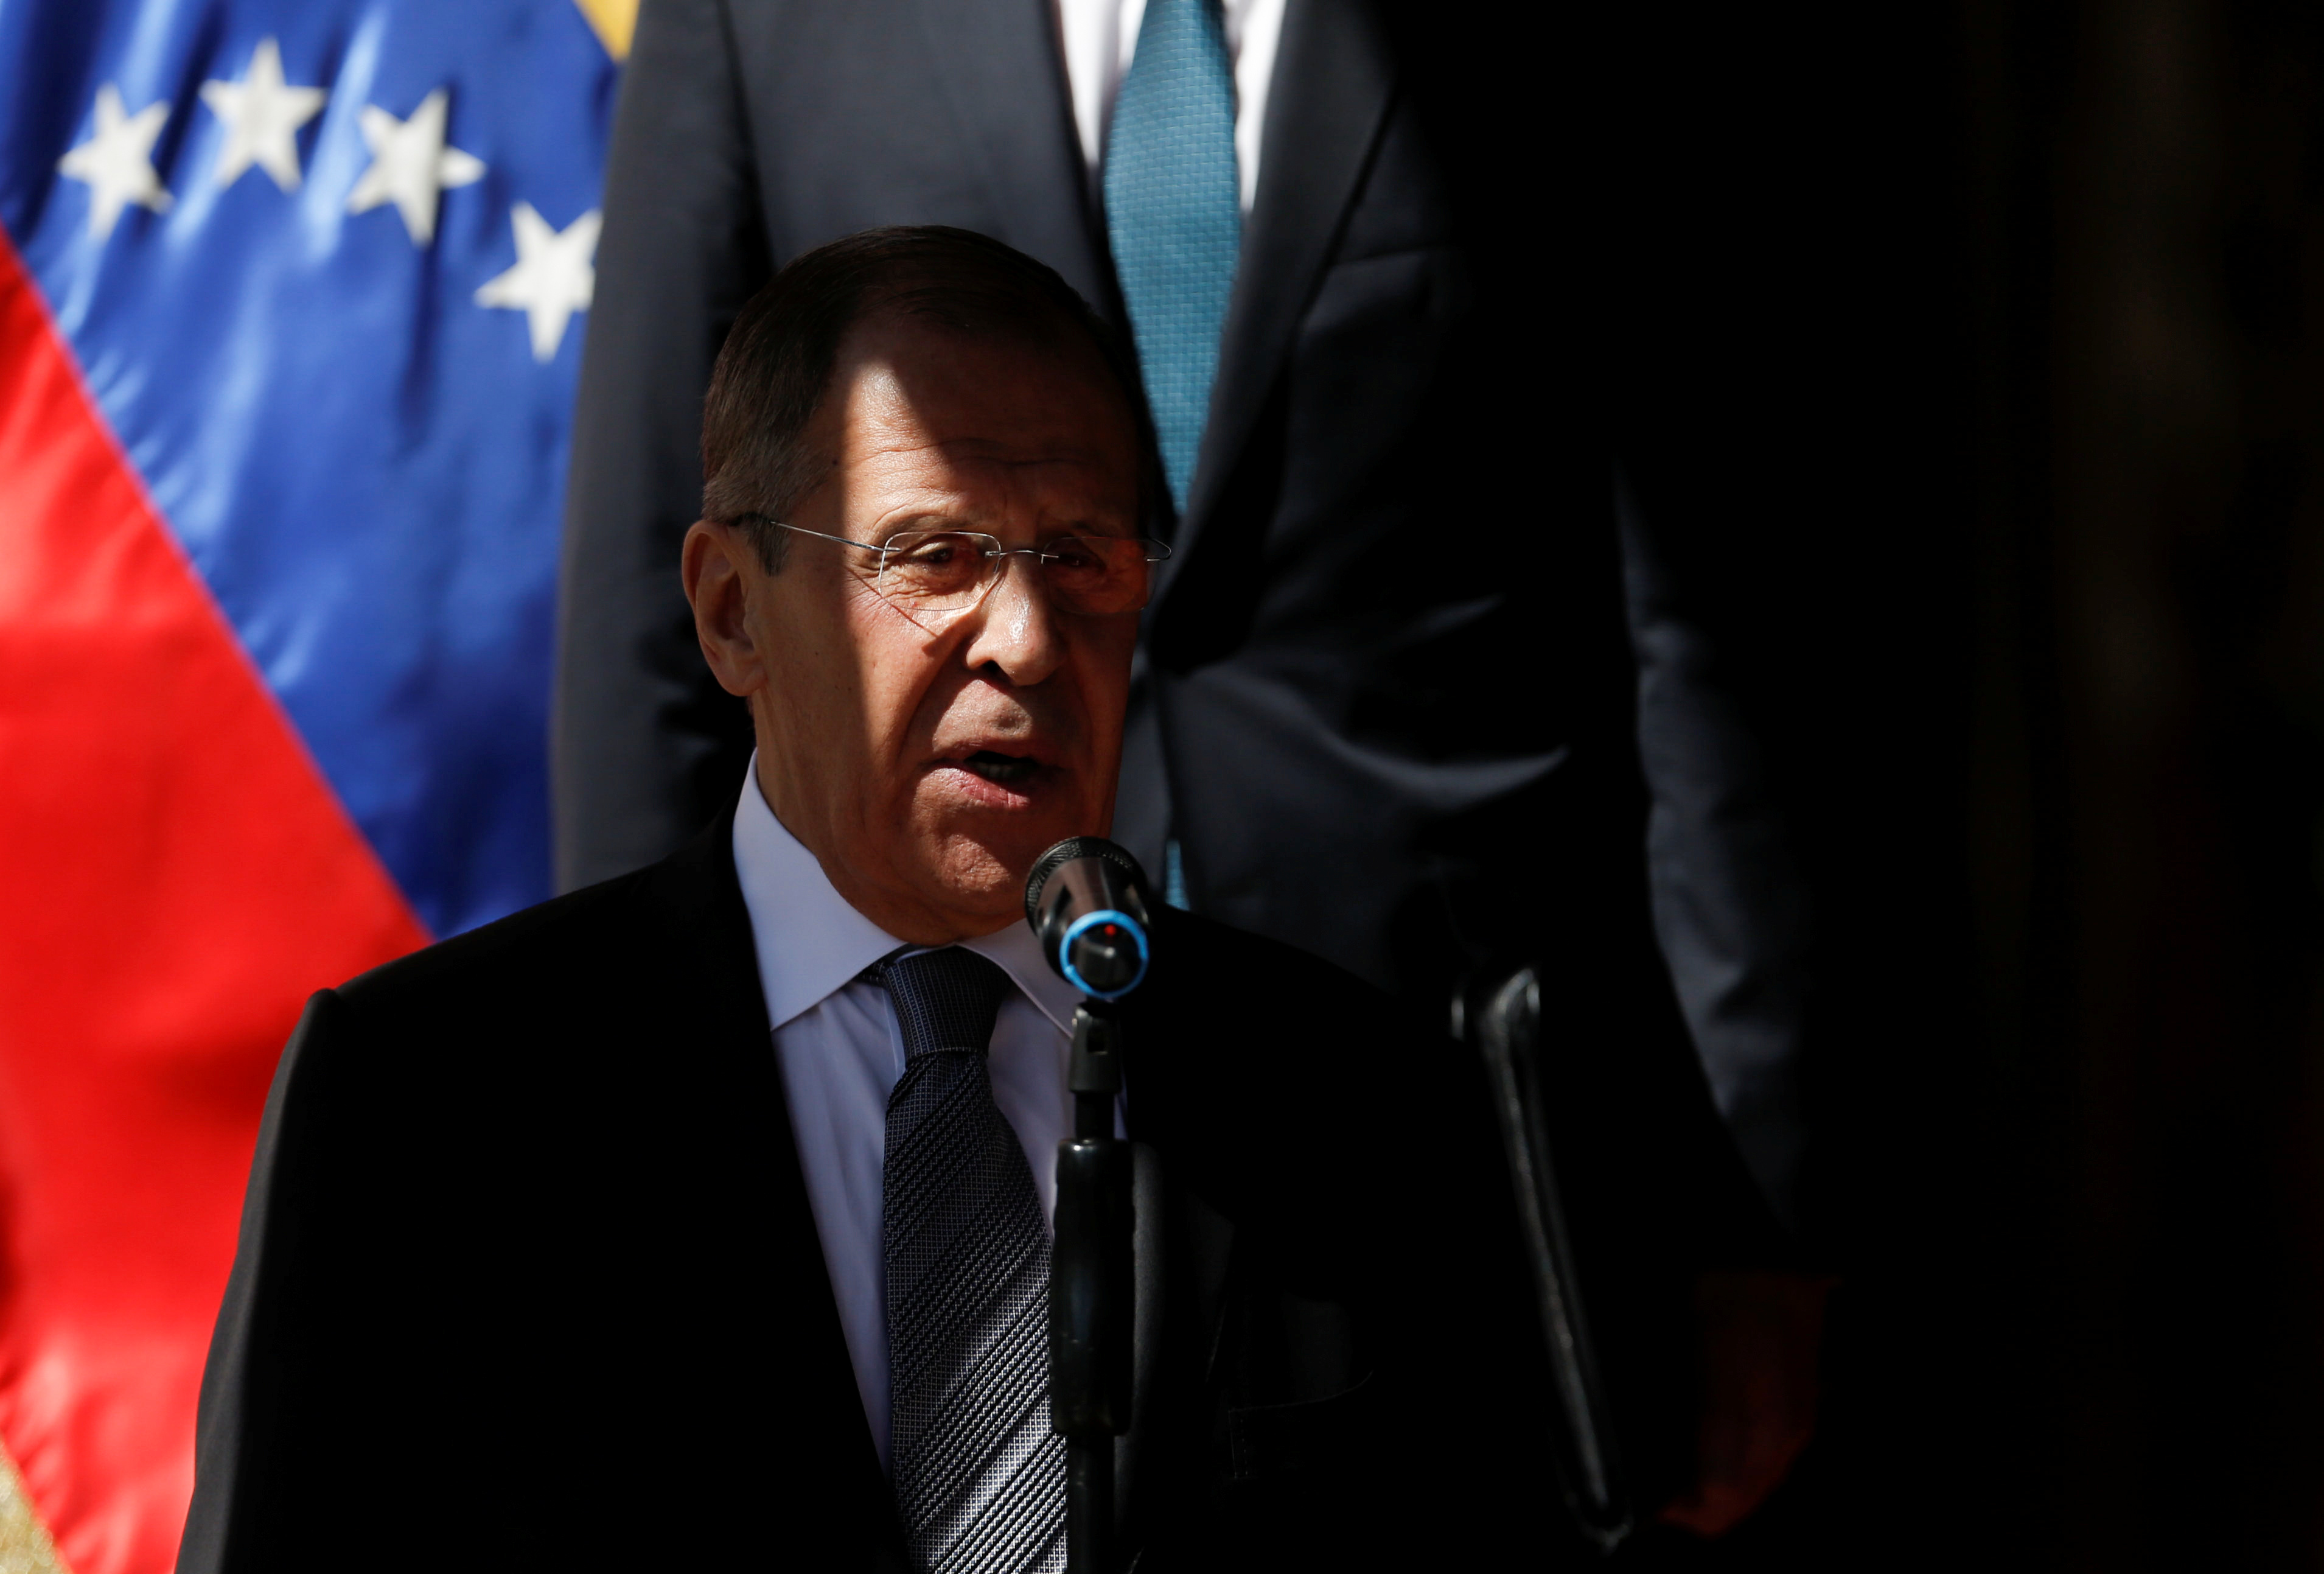 Lavrov confirmó que servicios secretos de Rusia y Venezuela mantienen contactos